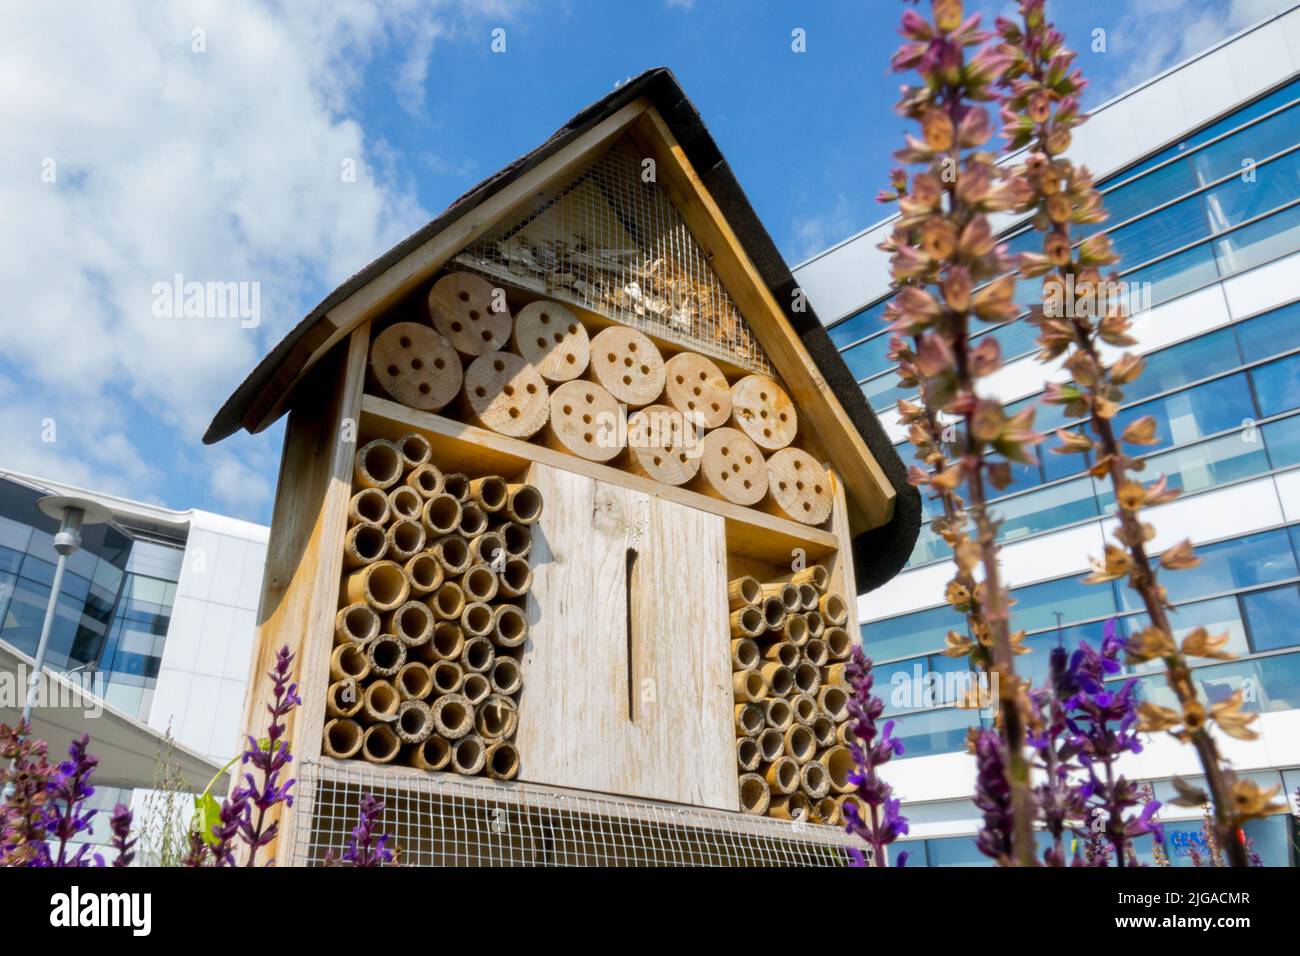 Hôtel d'insectes, hôtel d'abeilles, hôtel d'insectes, maison de refuge de banlieue pour les insectes écologiques, urbain, insectes bénéfiques Banque D'Images